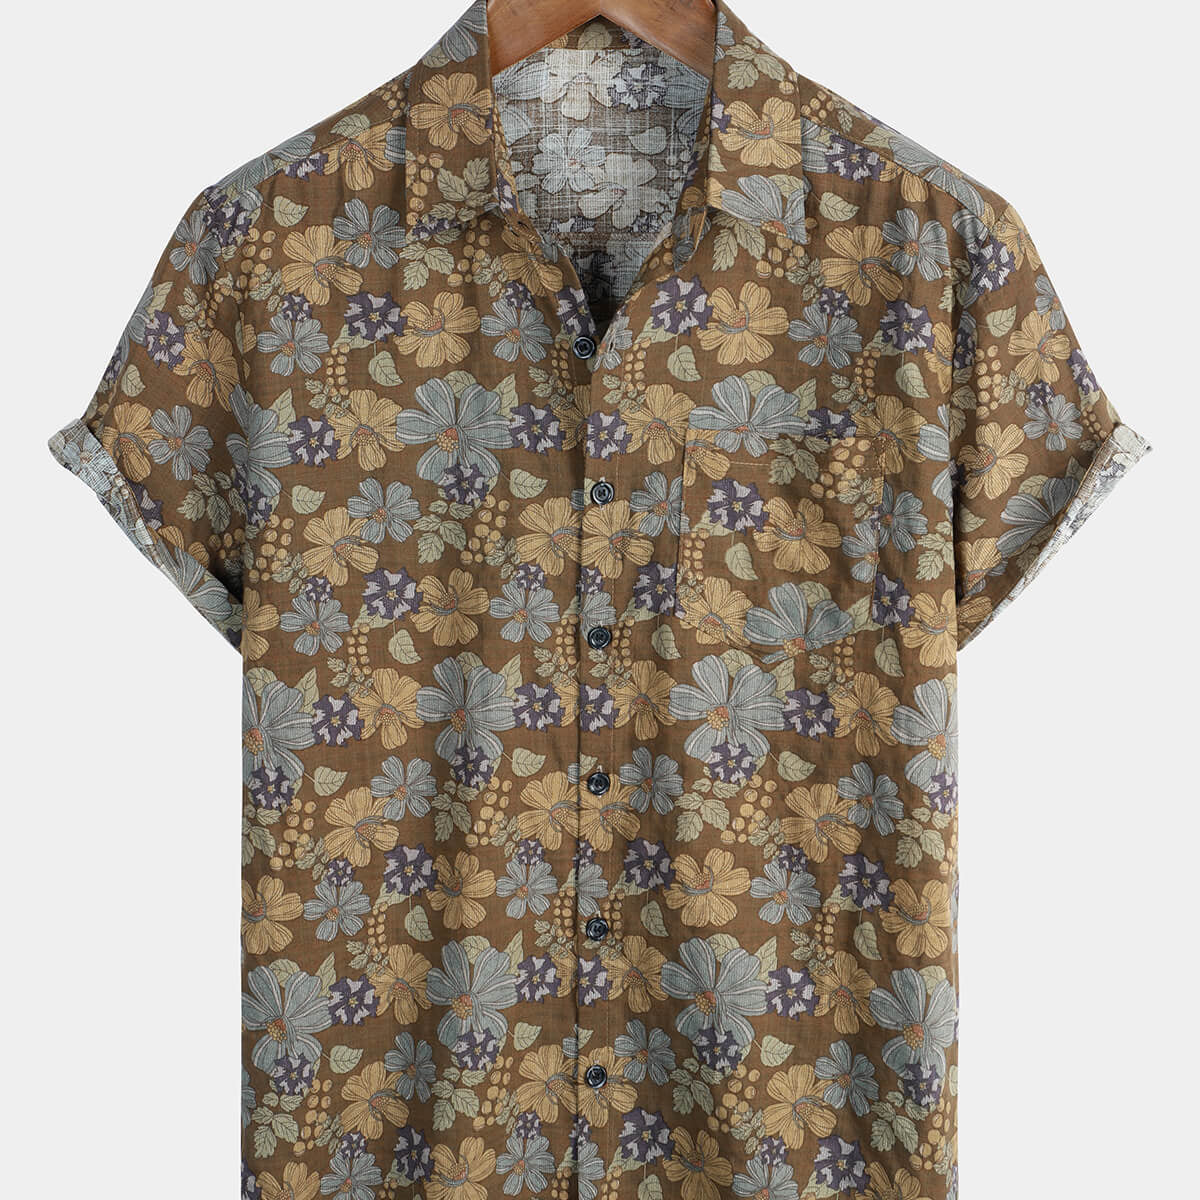 Men's Grey Floral Hawaiian Vintage Beach Button Up Summer Shirt